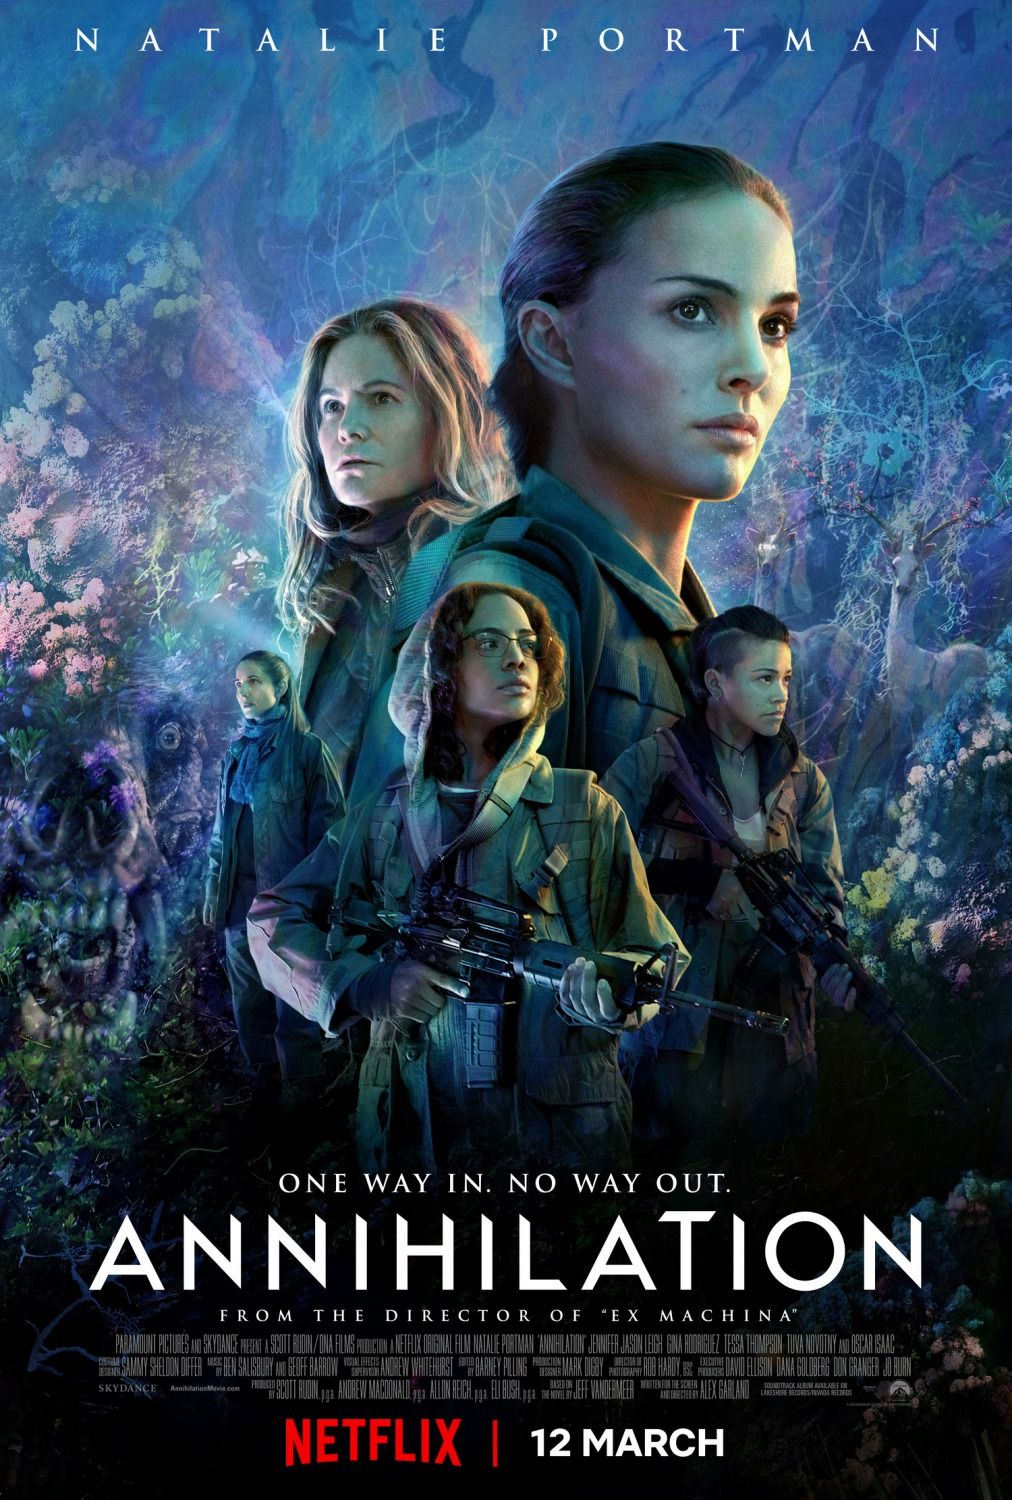 Annihilation (2018) - ประสบการณ์ Sci-Fi ที่น่าตื่นเต้นและเหลือเชื่อ